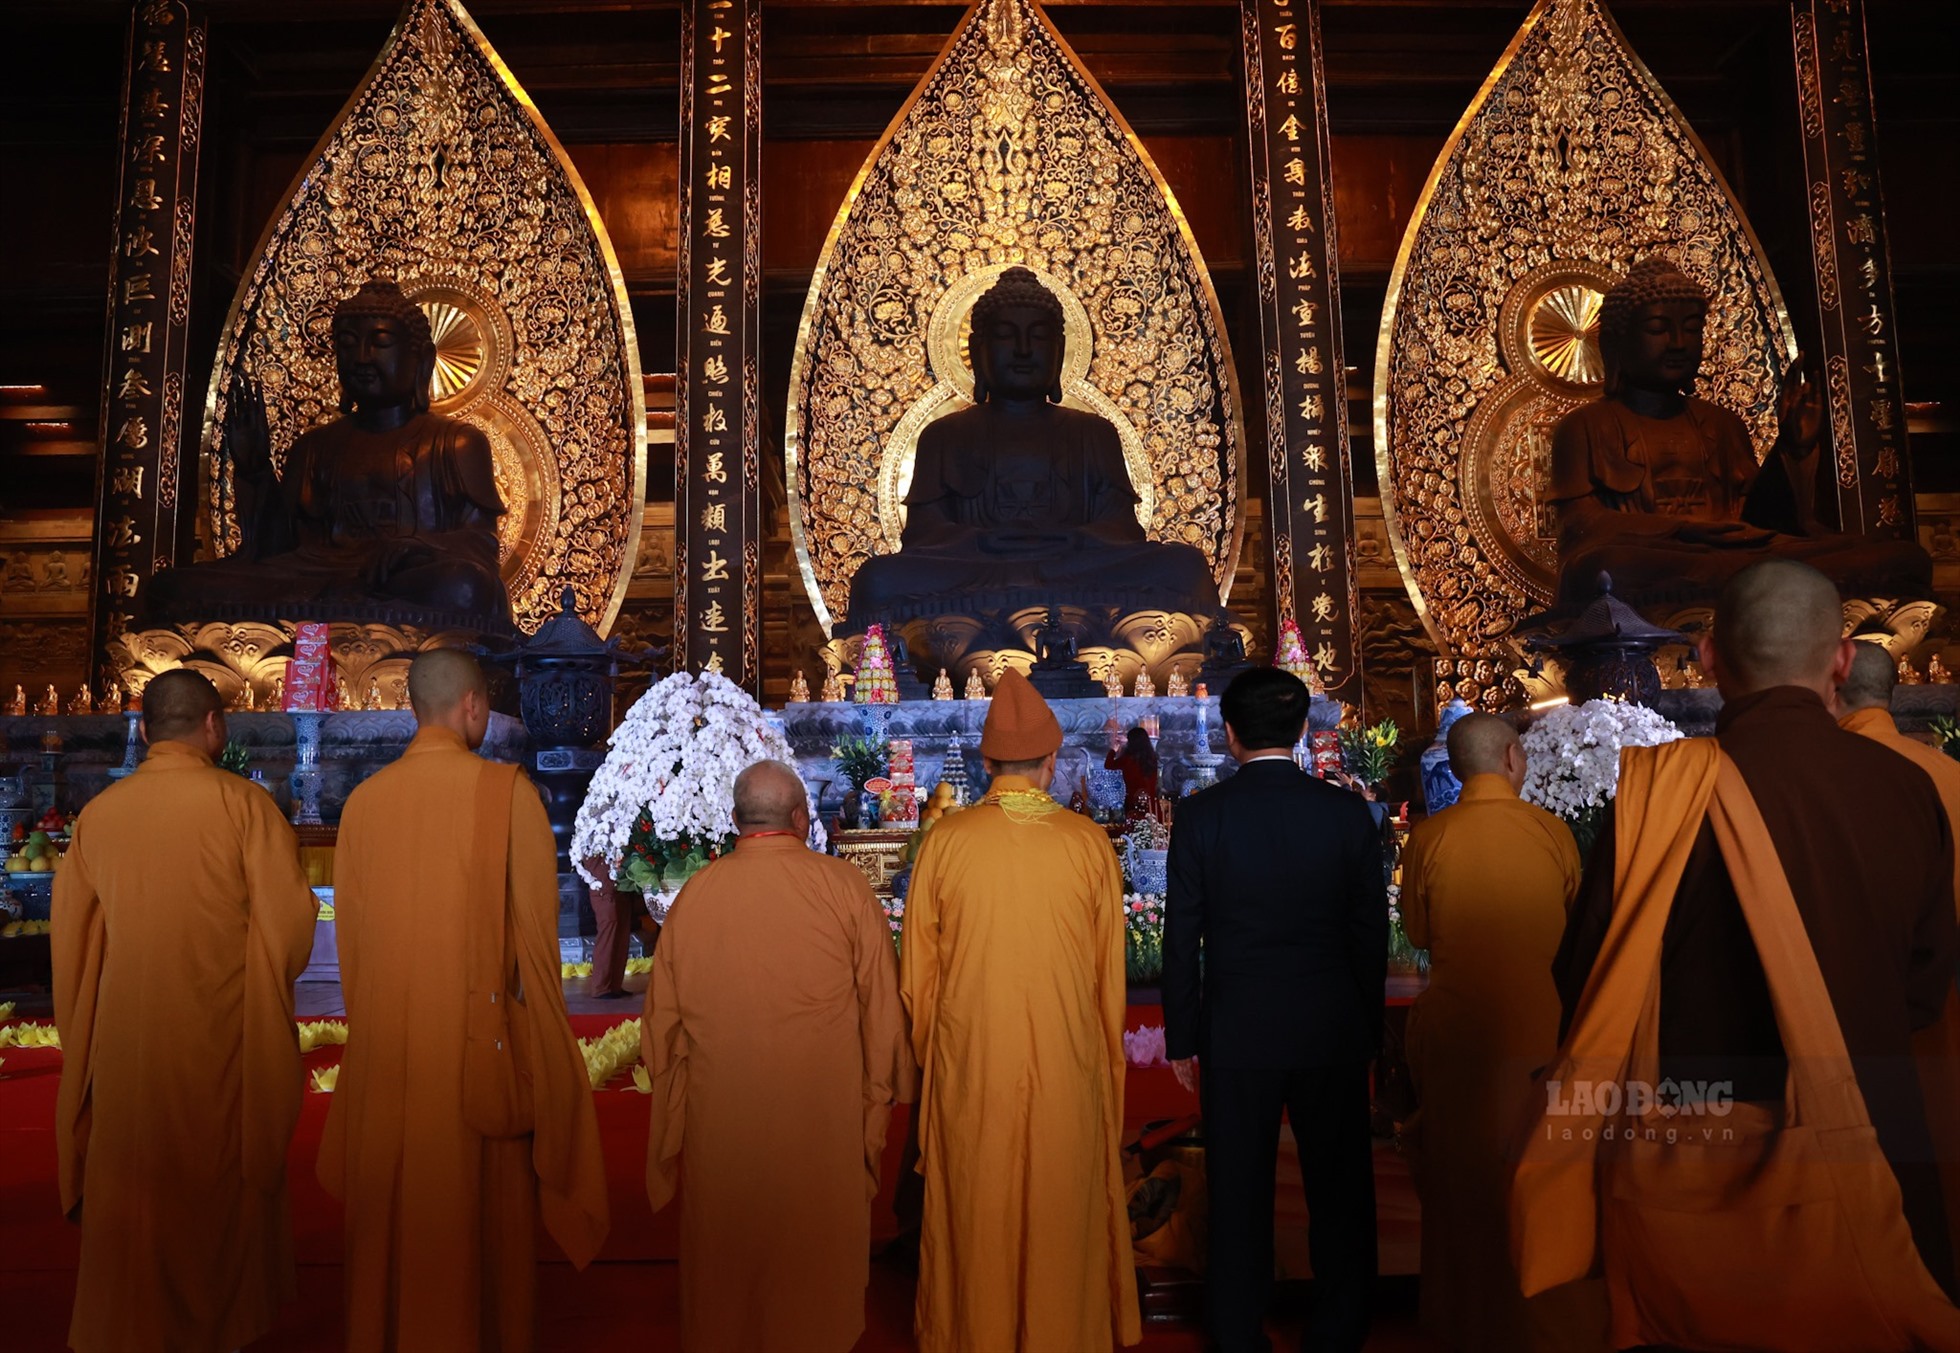 Chương trình Khai hội Xuân Tam Chúc Quý Mão được truyền hình trực tiếp trên sóng VTV2, phản ánh đầy đủ, sinh động tất cả các hoạt động của lễ hội tại chùa.